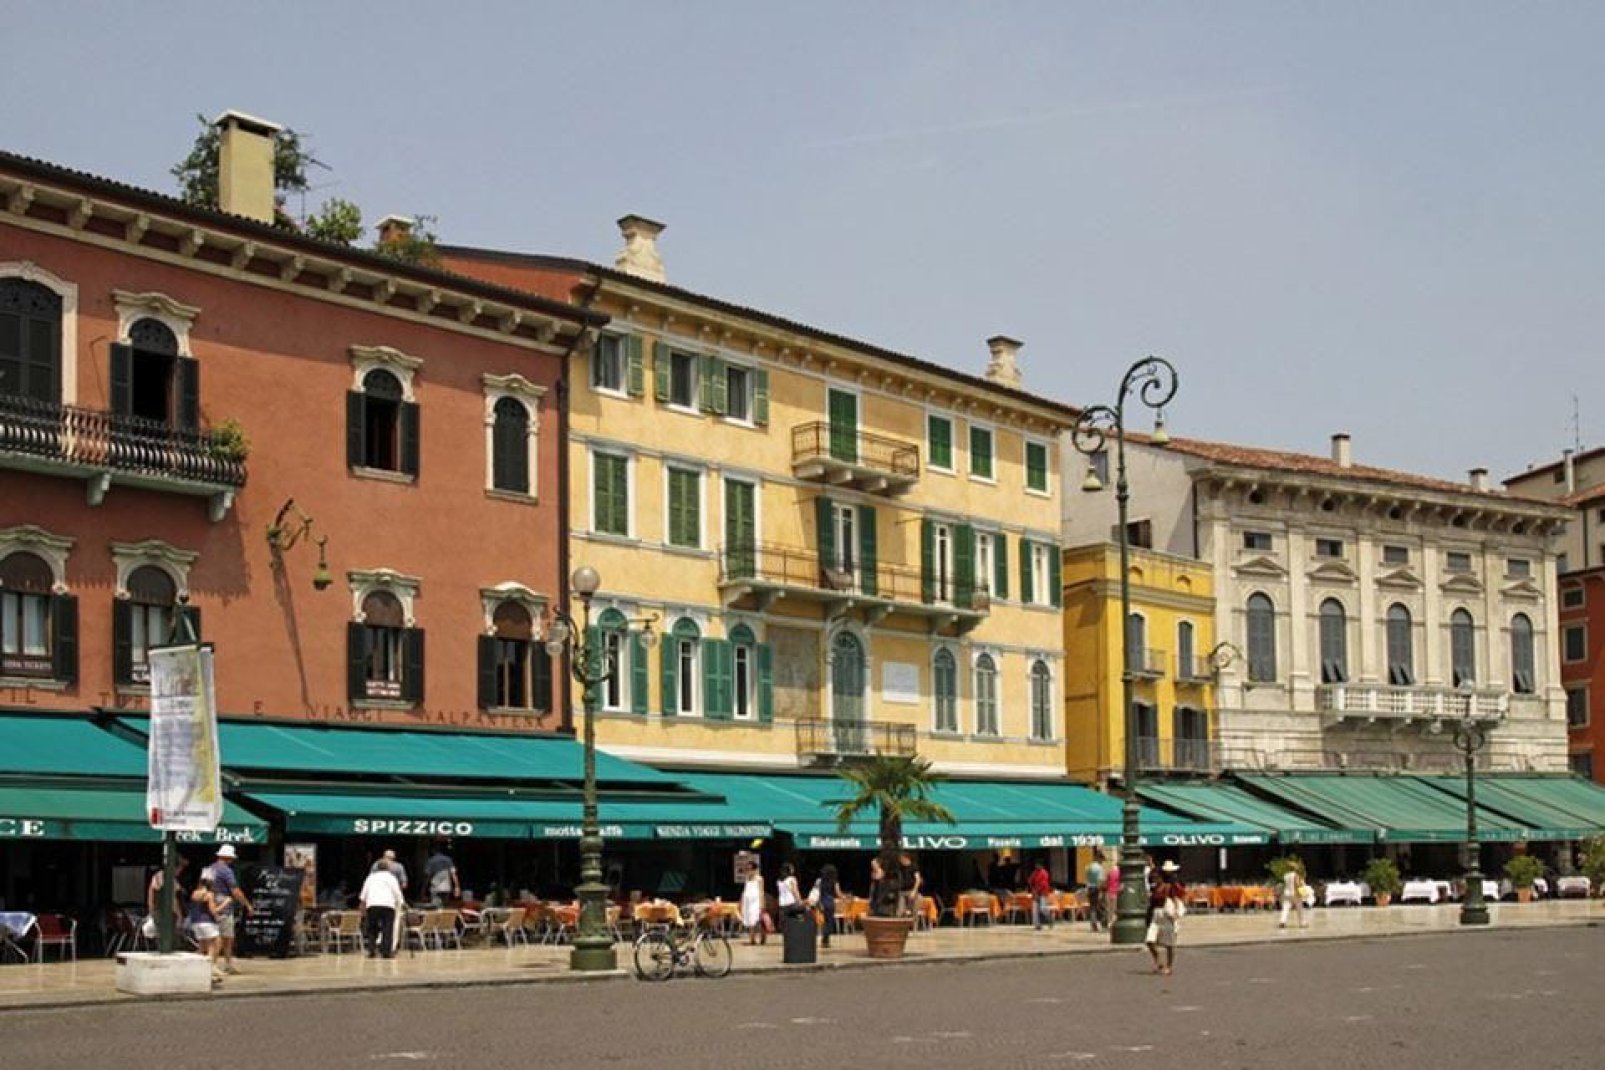 La piazza più grande di Verona si trova nel centro storico. Questa serie di palazzi affiancano il Liston, luogo delle passeggiate dei cittadini veronesi.